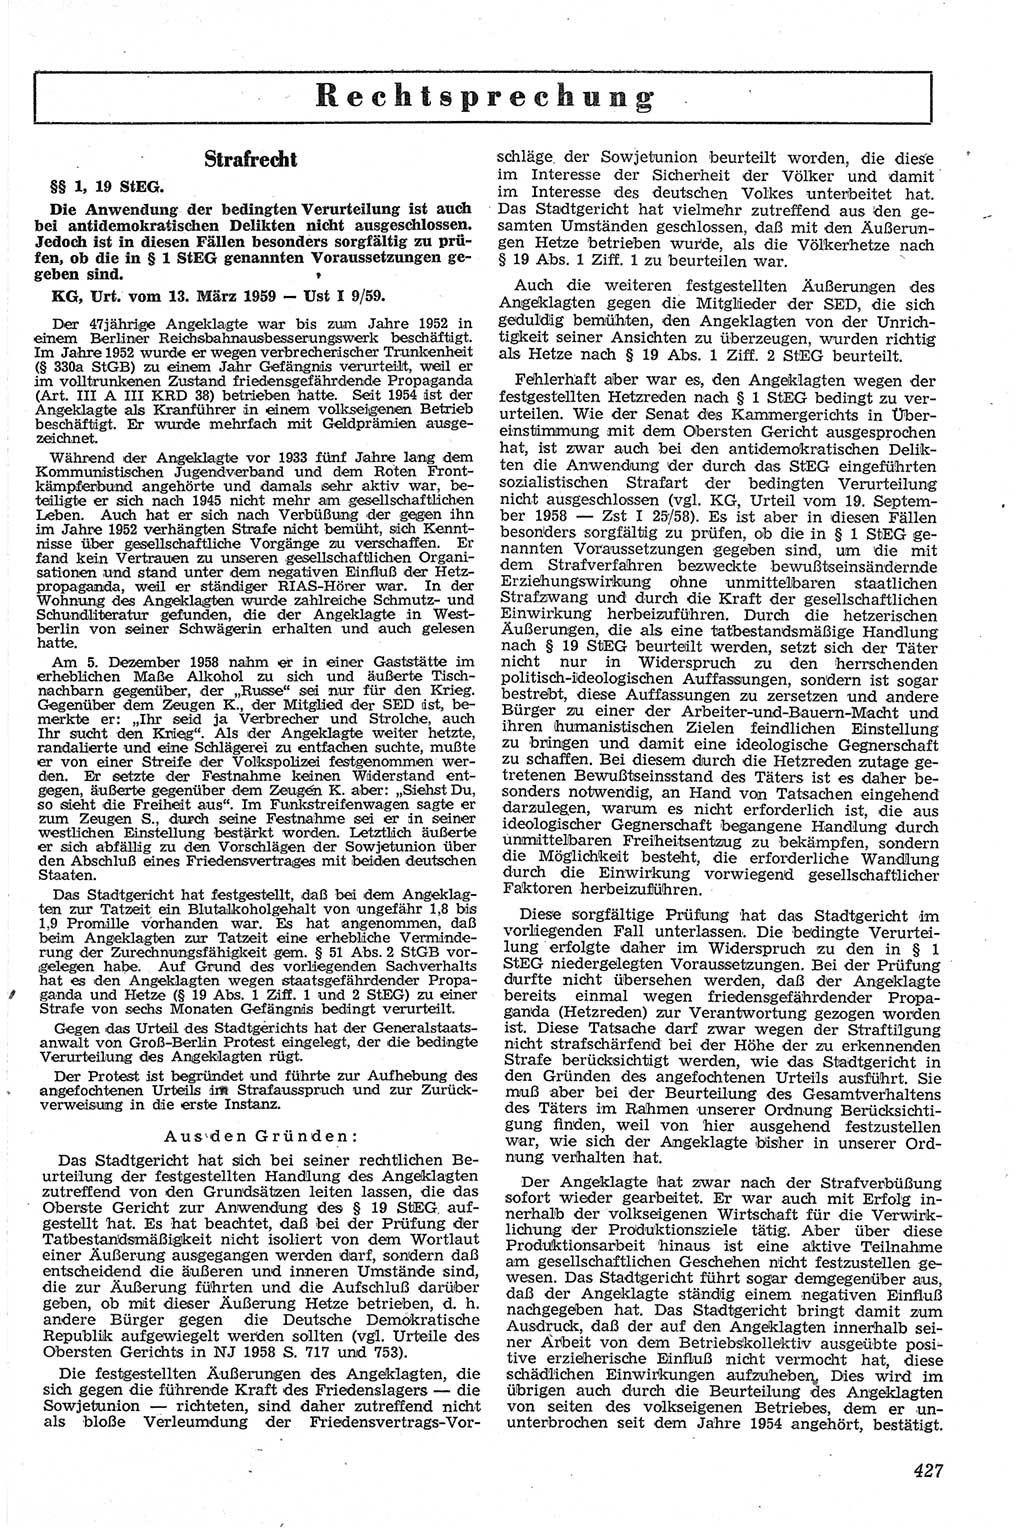 Neue Justiz (NJ), Zeitschrift für Recht und Rechtswissenschaft [Deutsche Demokratische Republik (DDR)], 13. Jahrgang 1959, Seite 427 (NJ DDR 1959, S. 427)